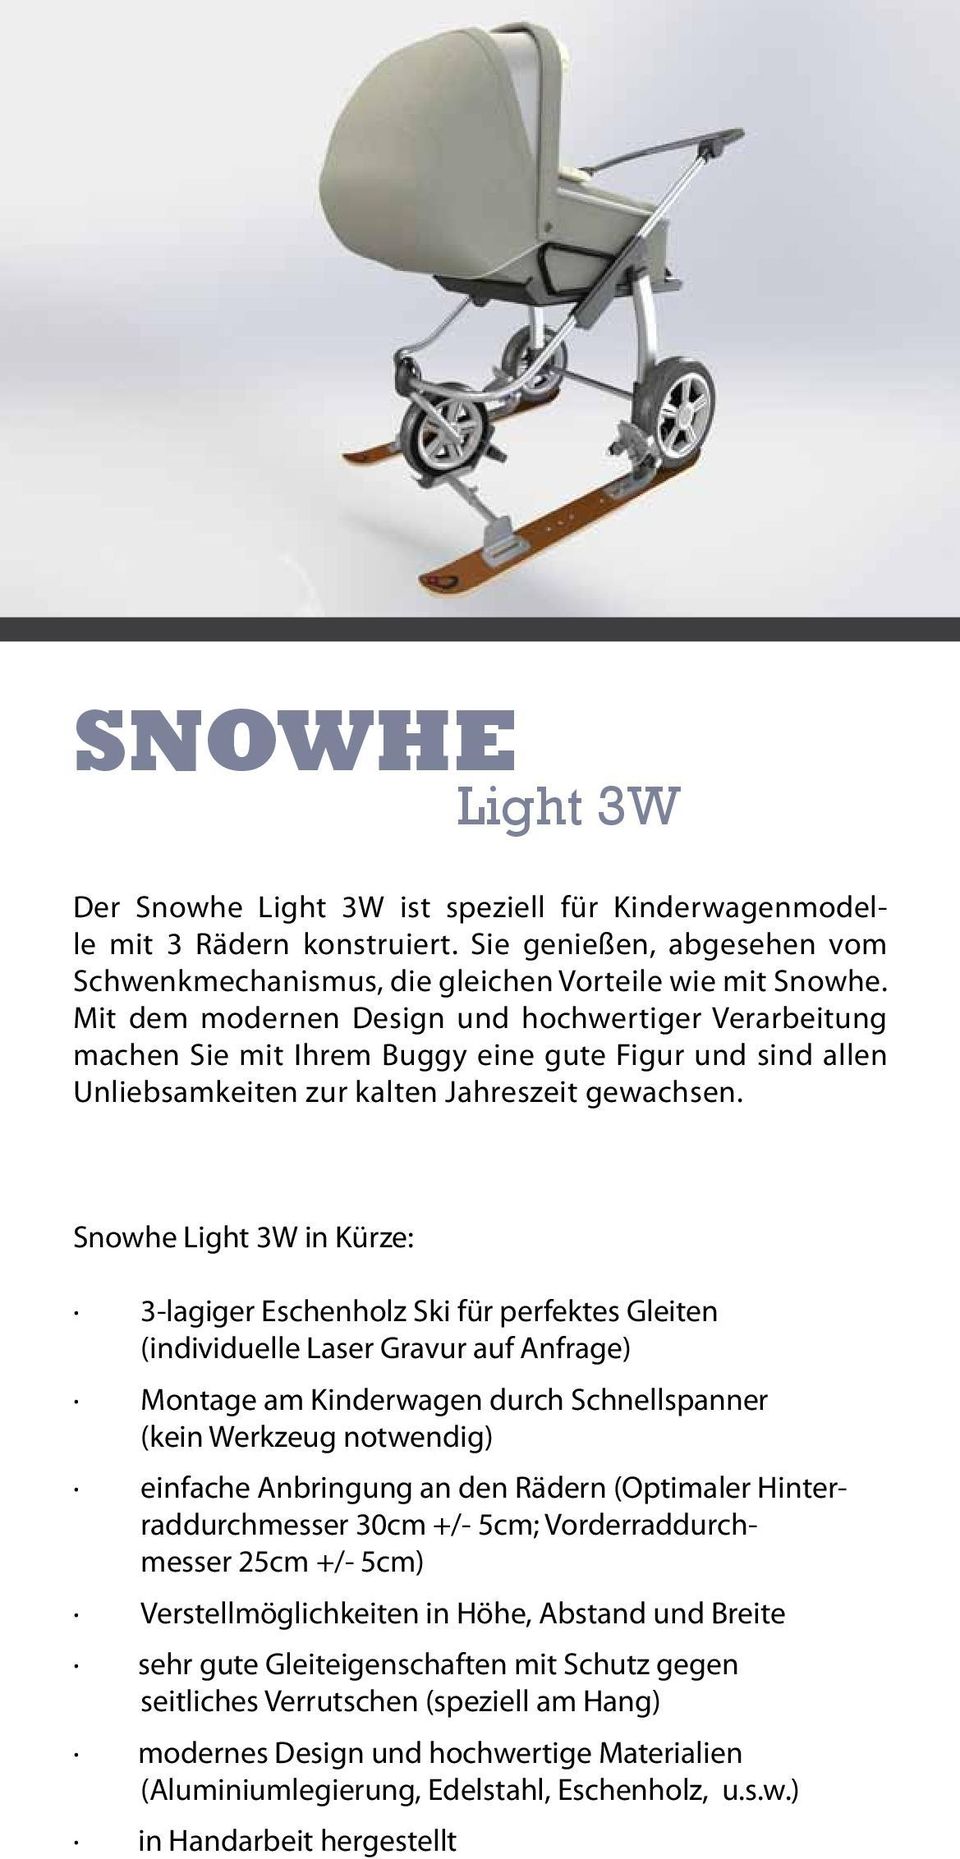 Snowhe Light 3W in Kürze: 3-lagiger Eschenholz Ski für perfektes Gleiten (individuelle Laser Gravur auf Anfrage) Montage am Kinderwagen durch Schnellspanner (kein Werkzeug notwendig) einfache